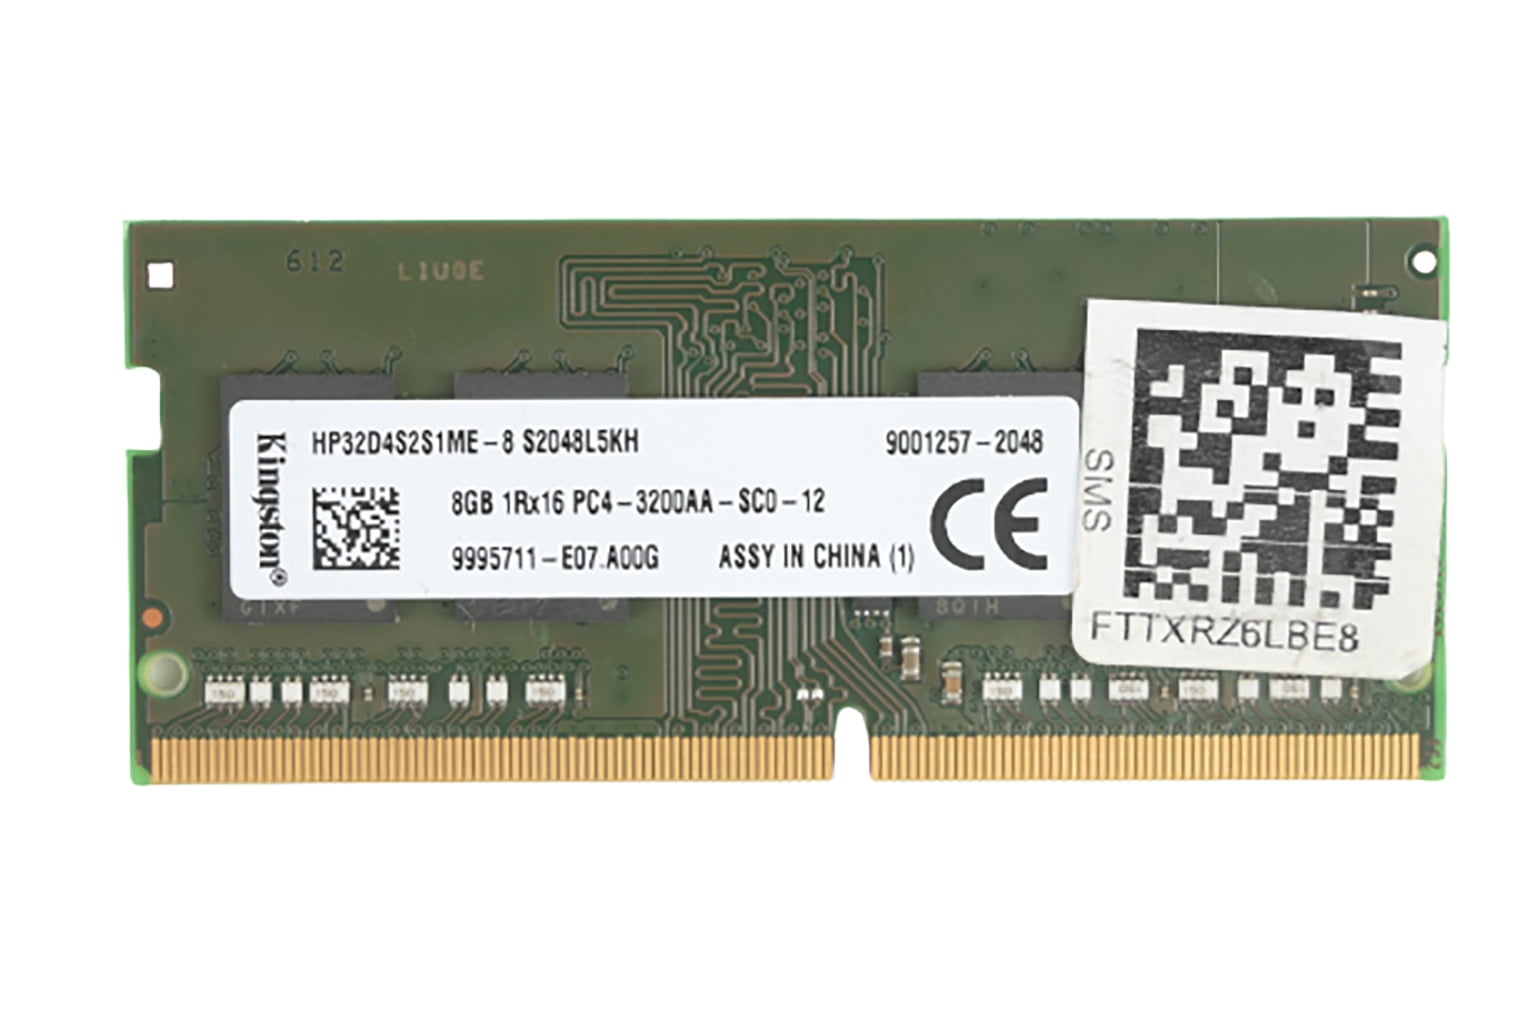 Ombord Forføre død Kingston 8GB DDR4 3200MHz 1RX16 PC4-3200AA 260P 1.2V SODIMM Laptop Memory  HP32D4S2S1ME-8 - Walmart.com